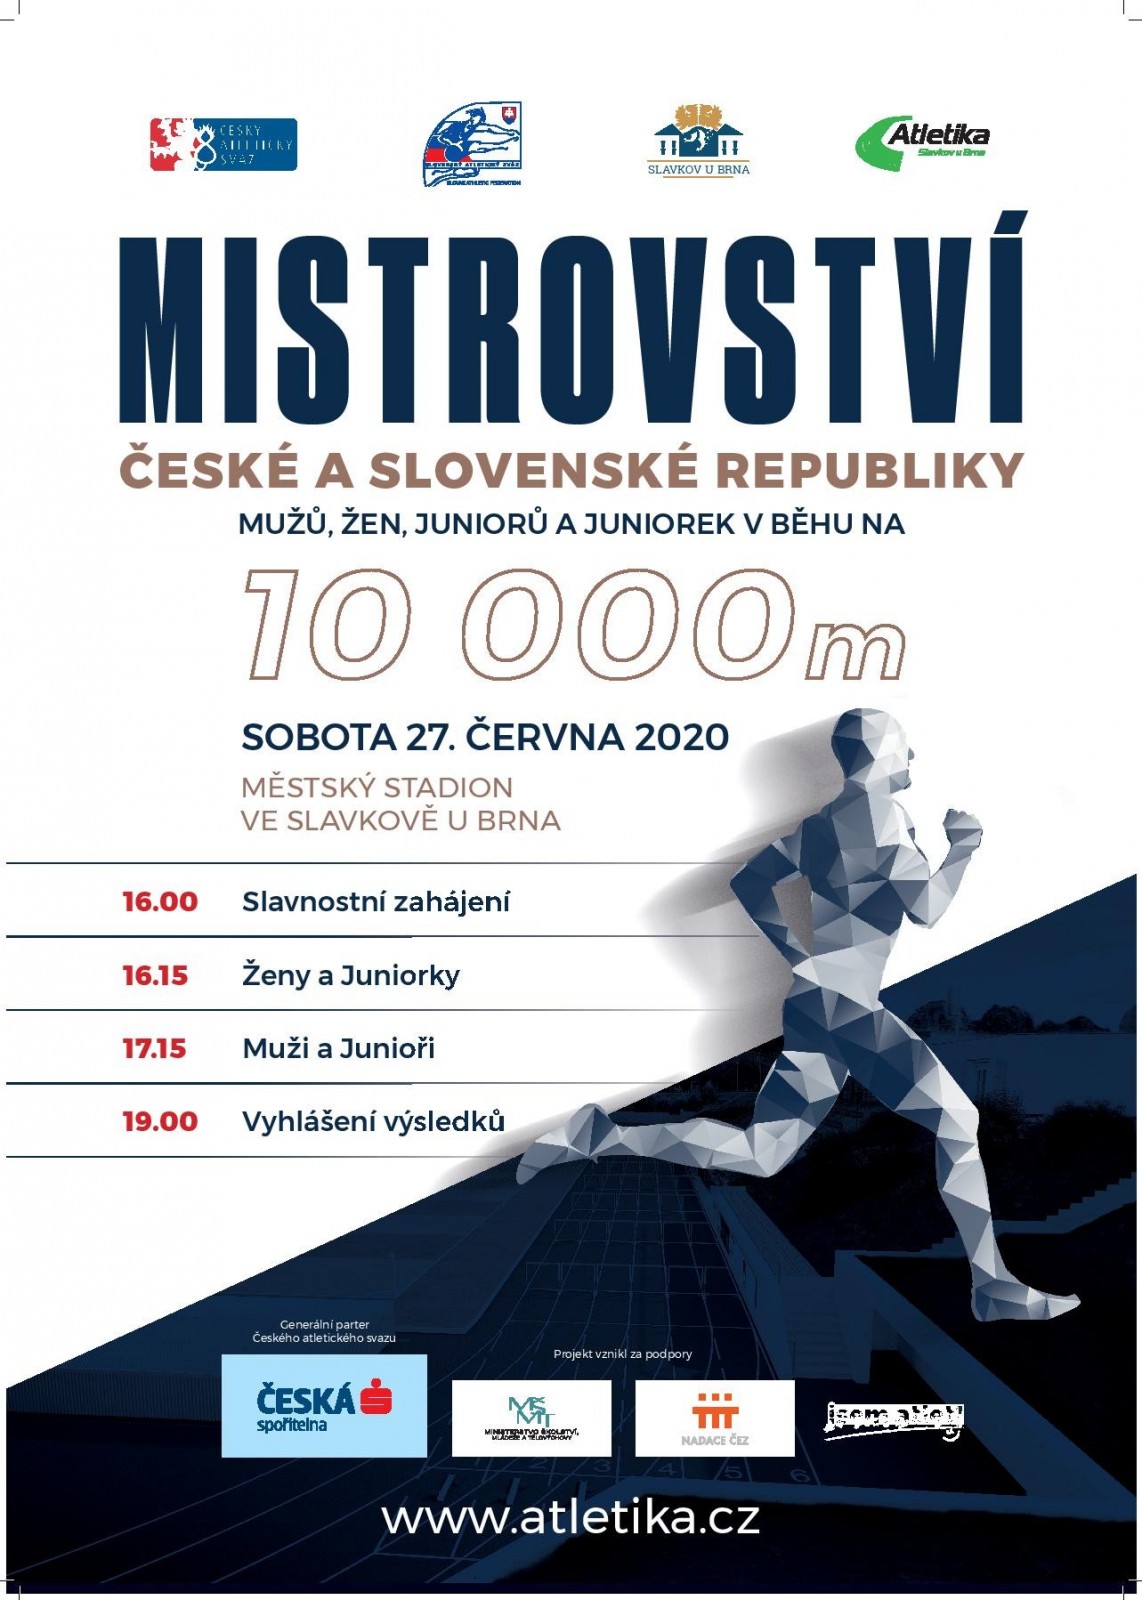 Mistrovství České a Slovenské republiky v běhu na 10000m na dráze